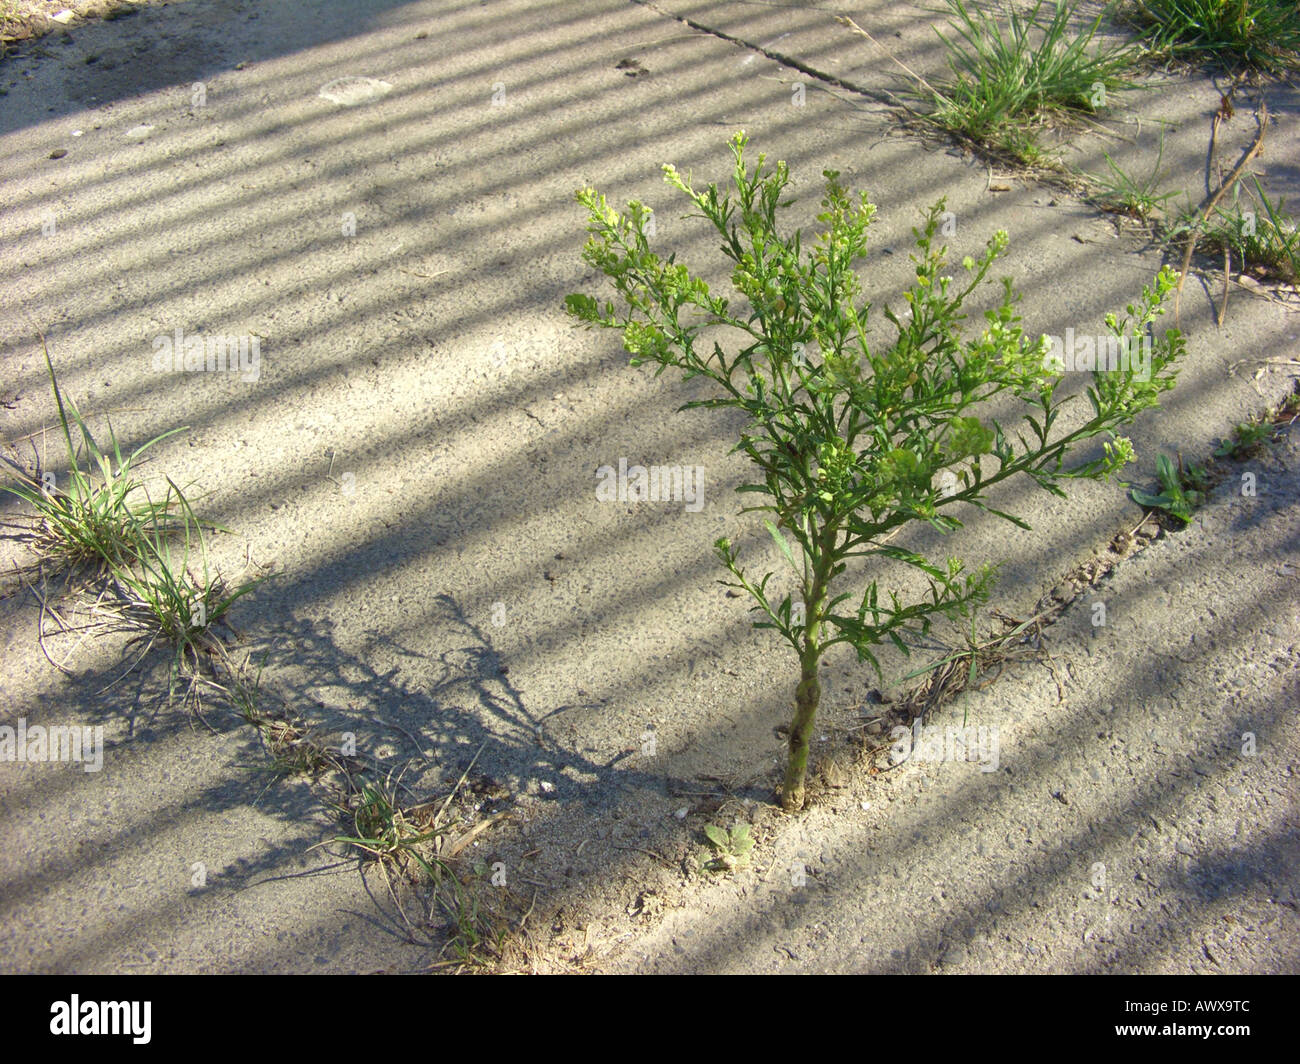 Narrowleaf Kresse, Narrow-leaved Feldkresse, Peppergrass (Lepidium Ruderale), auf einem Bürgersteig, Deutschland, Nordrhein-Westphali Stockfoto